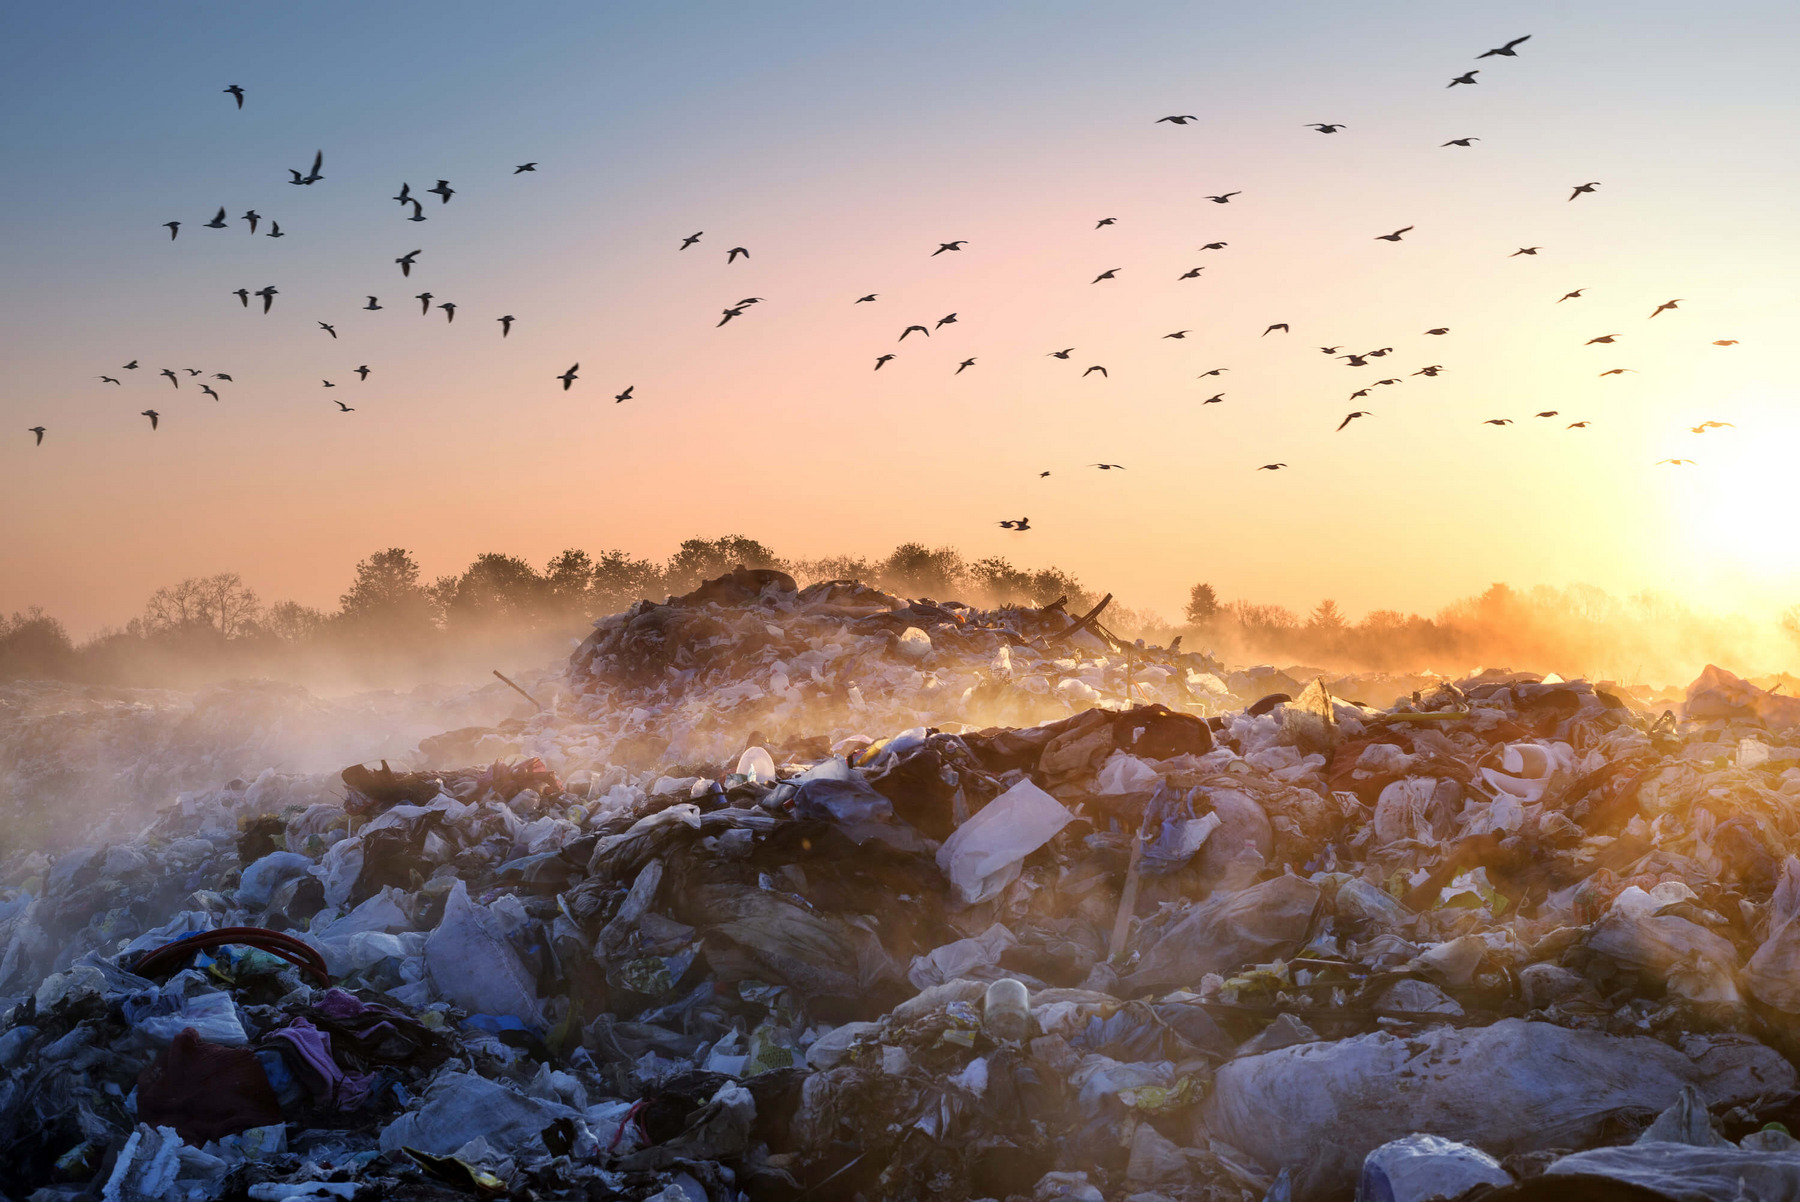 Die Sonne geht über einer großen Mülldeponie auf, die in Nebelschwaden gehüllt ist. Im Hintergrund ist Wald zu sehen. Darüber fliegen dutzende Vögel.